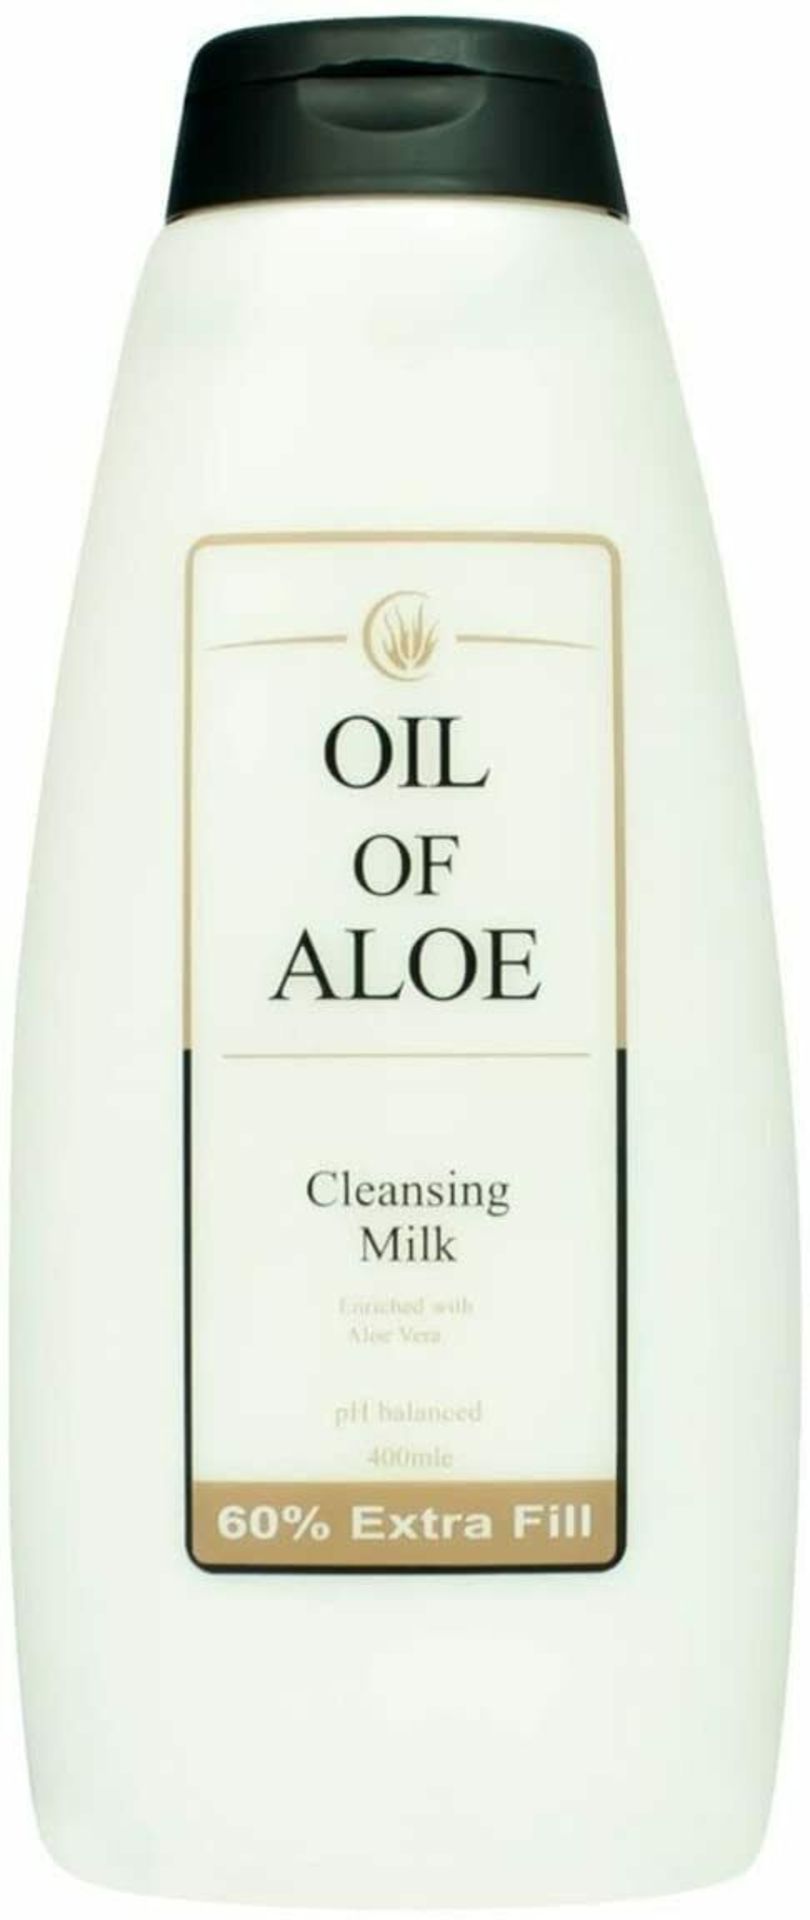 24 x Oil Of Aloe Cleansing Milk RRP 6.34 ea.